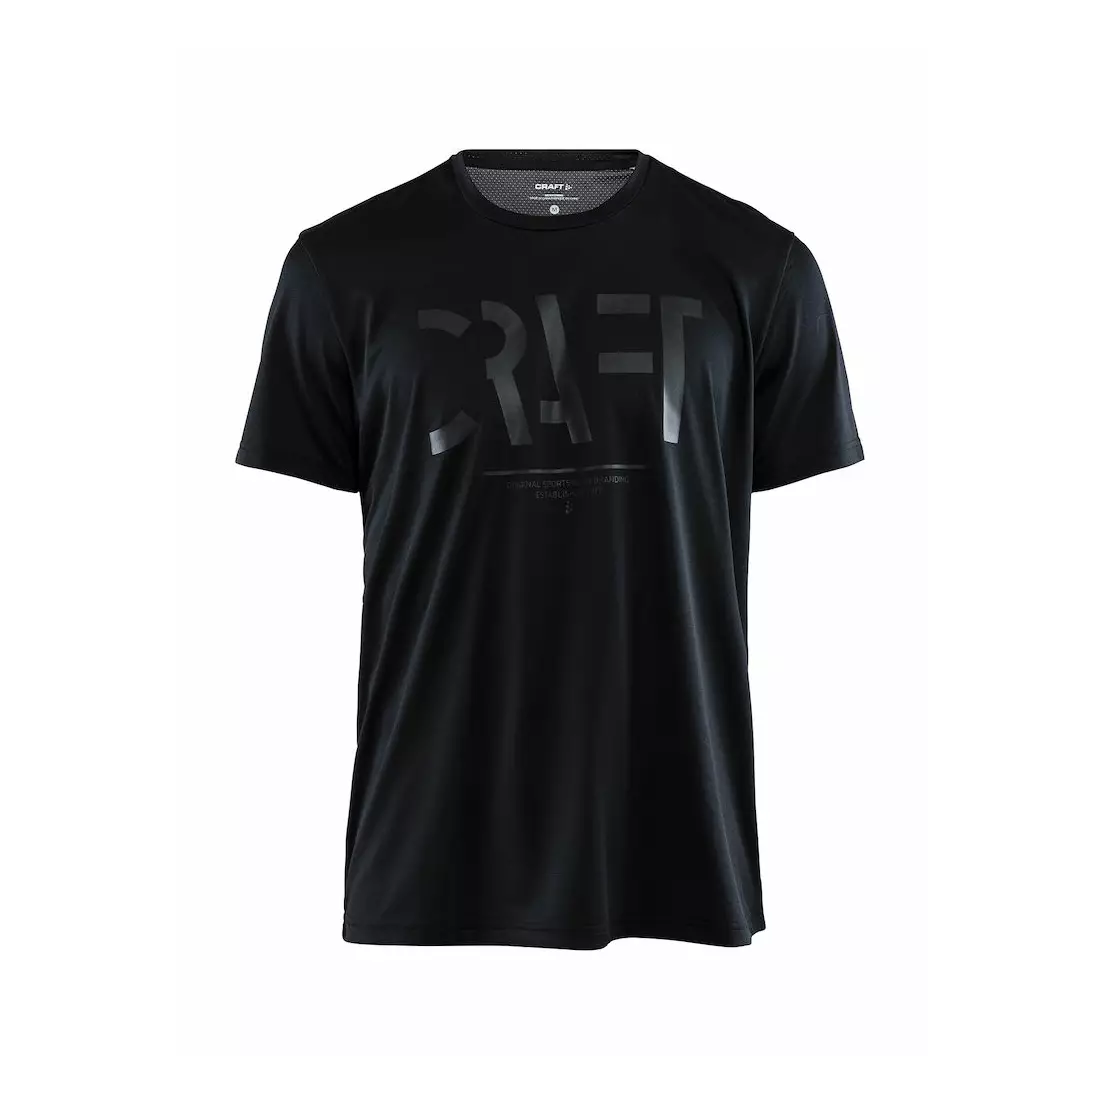 CRAFT EAZE MESH pánské sportovní / běžecké tričko Černá 1907018-999000